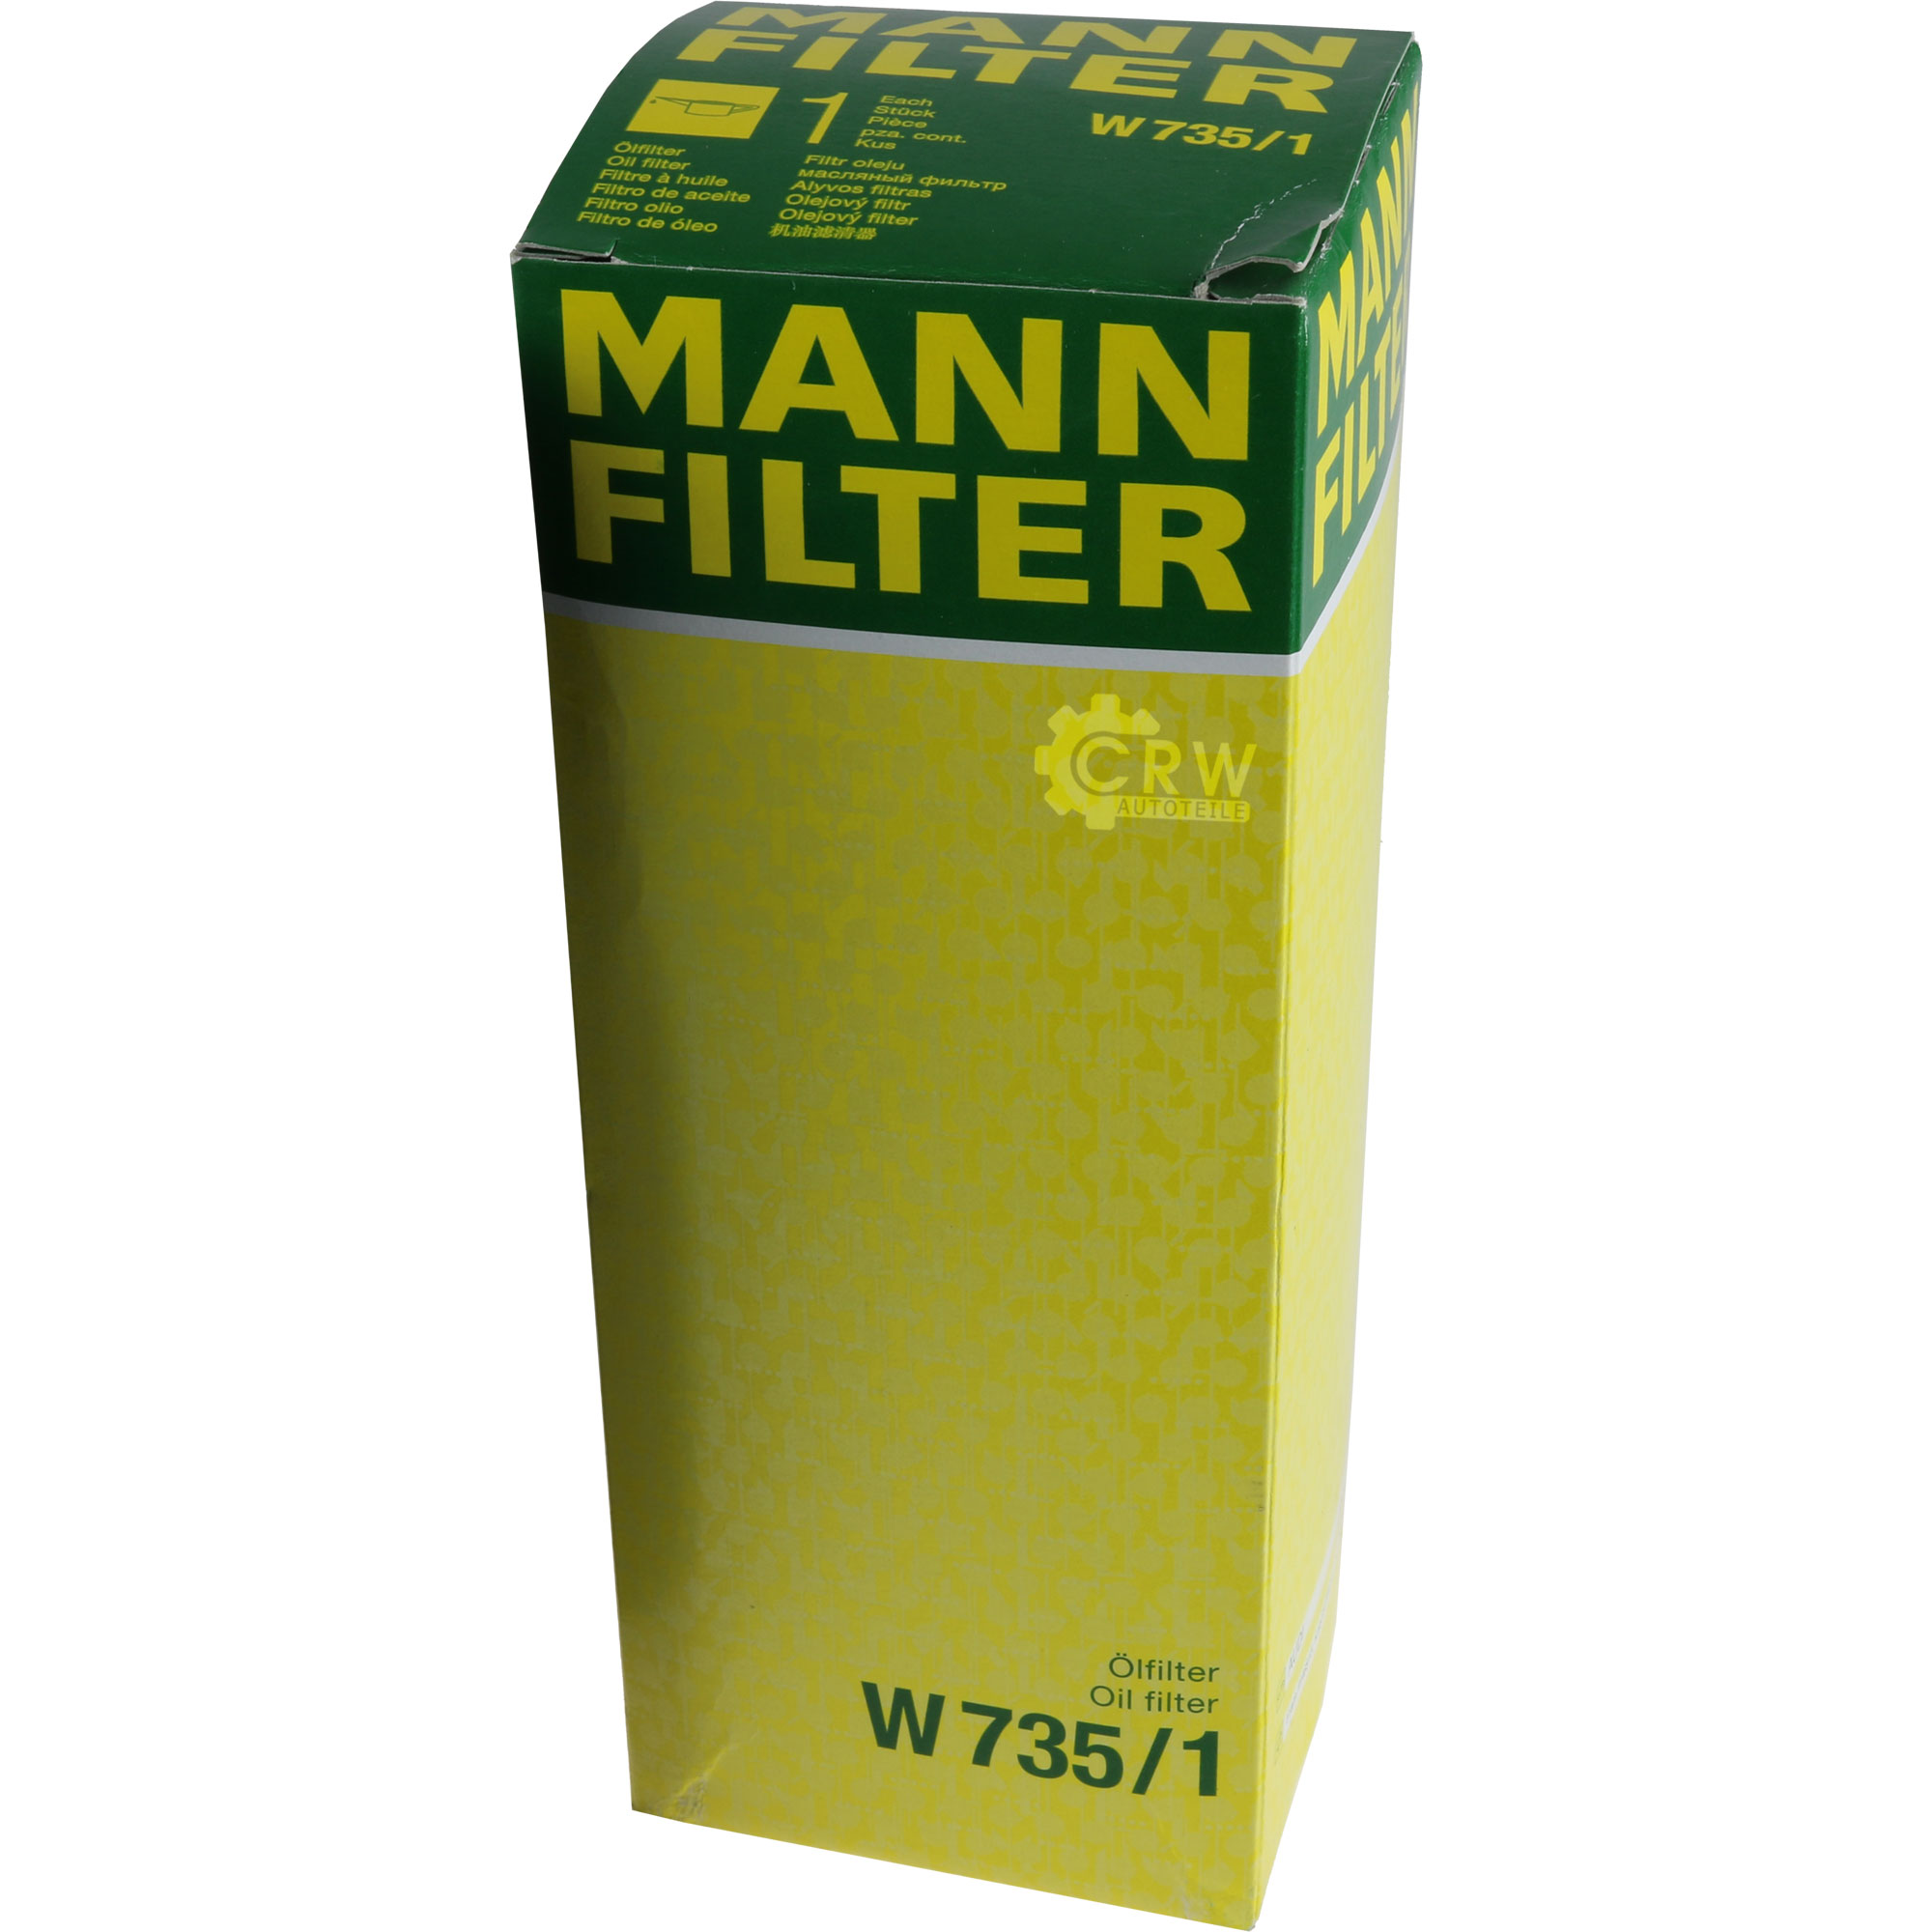 MANN-FILTER Ölfilter W 735/1 Oil Filter